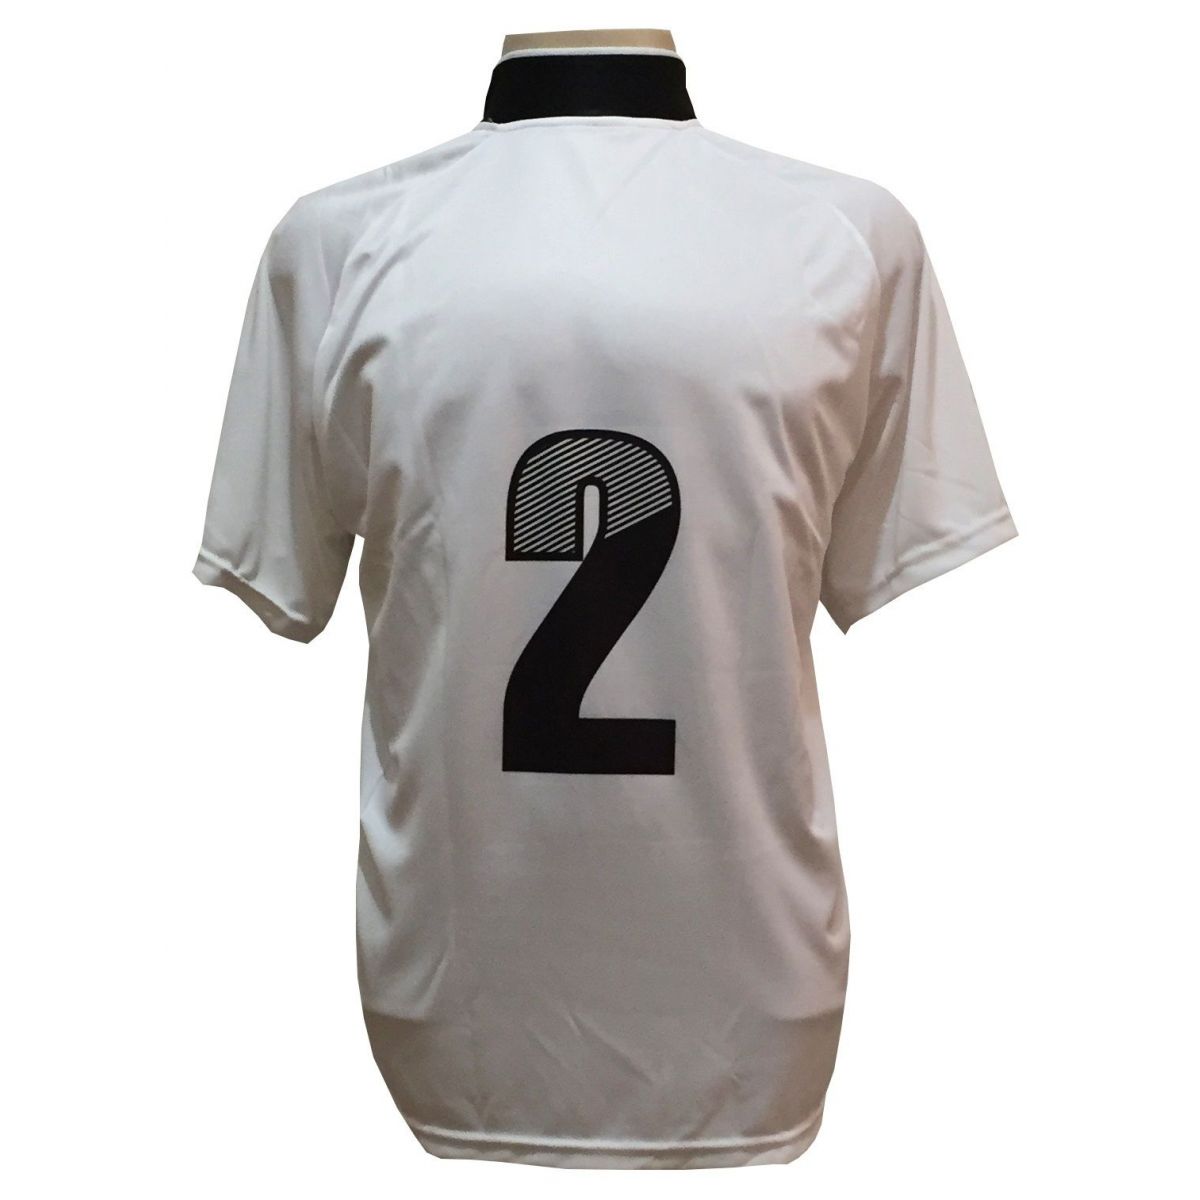 Uniforme Esportivo com 12 camisas modelo Milan Branco/Preto + 12 calções modelo Madrid Preto + Brindes